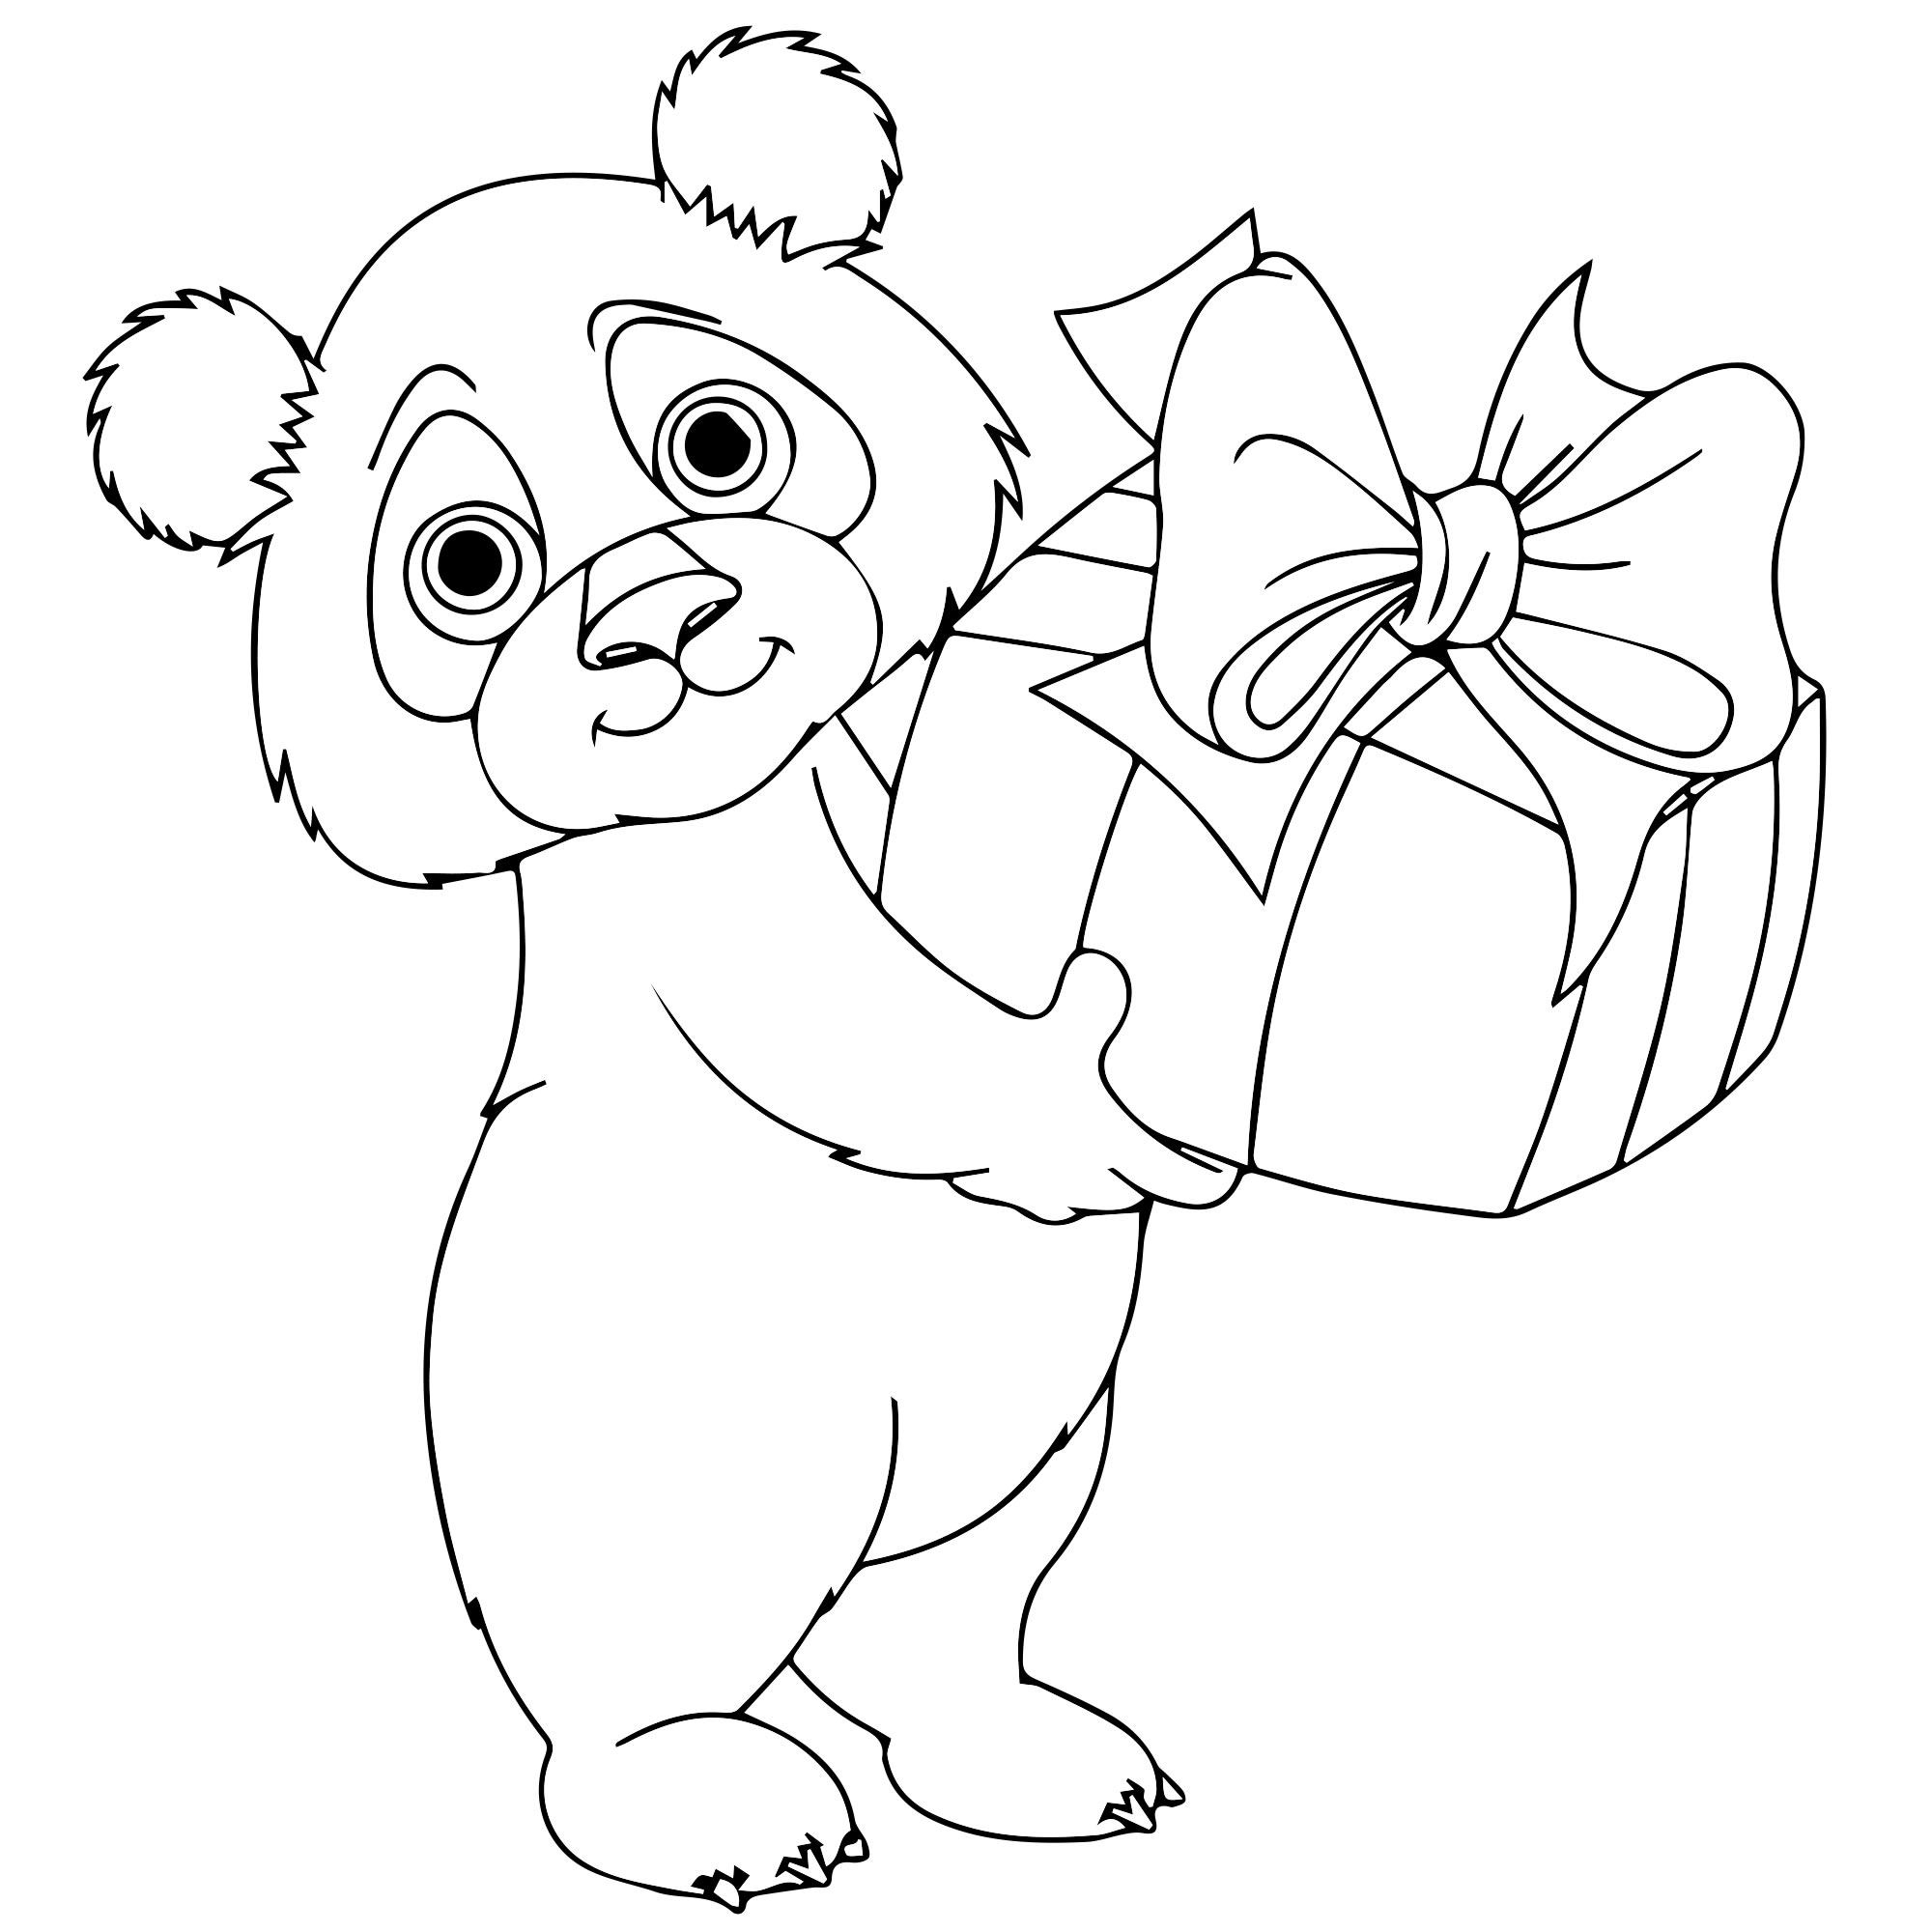 Раскраска Панда для самых маленьких ♥ Онлайн и Распечатать Бесплатно!